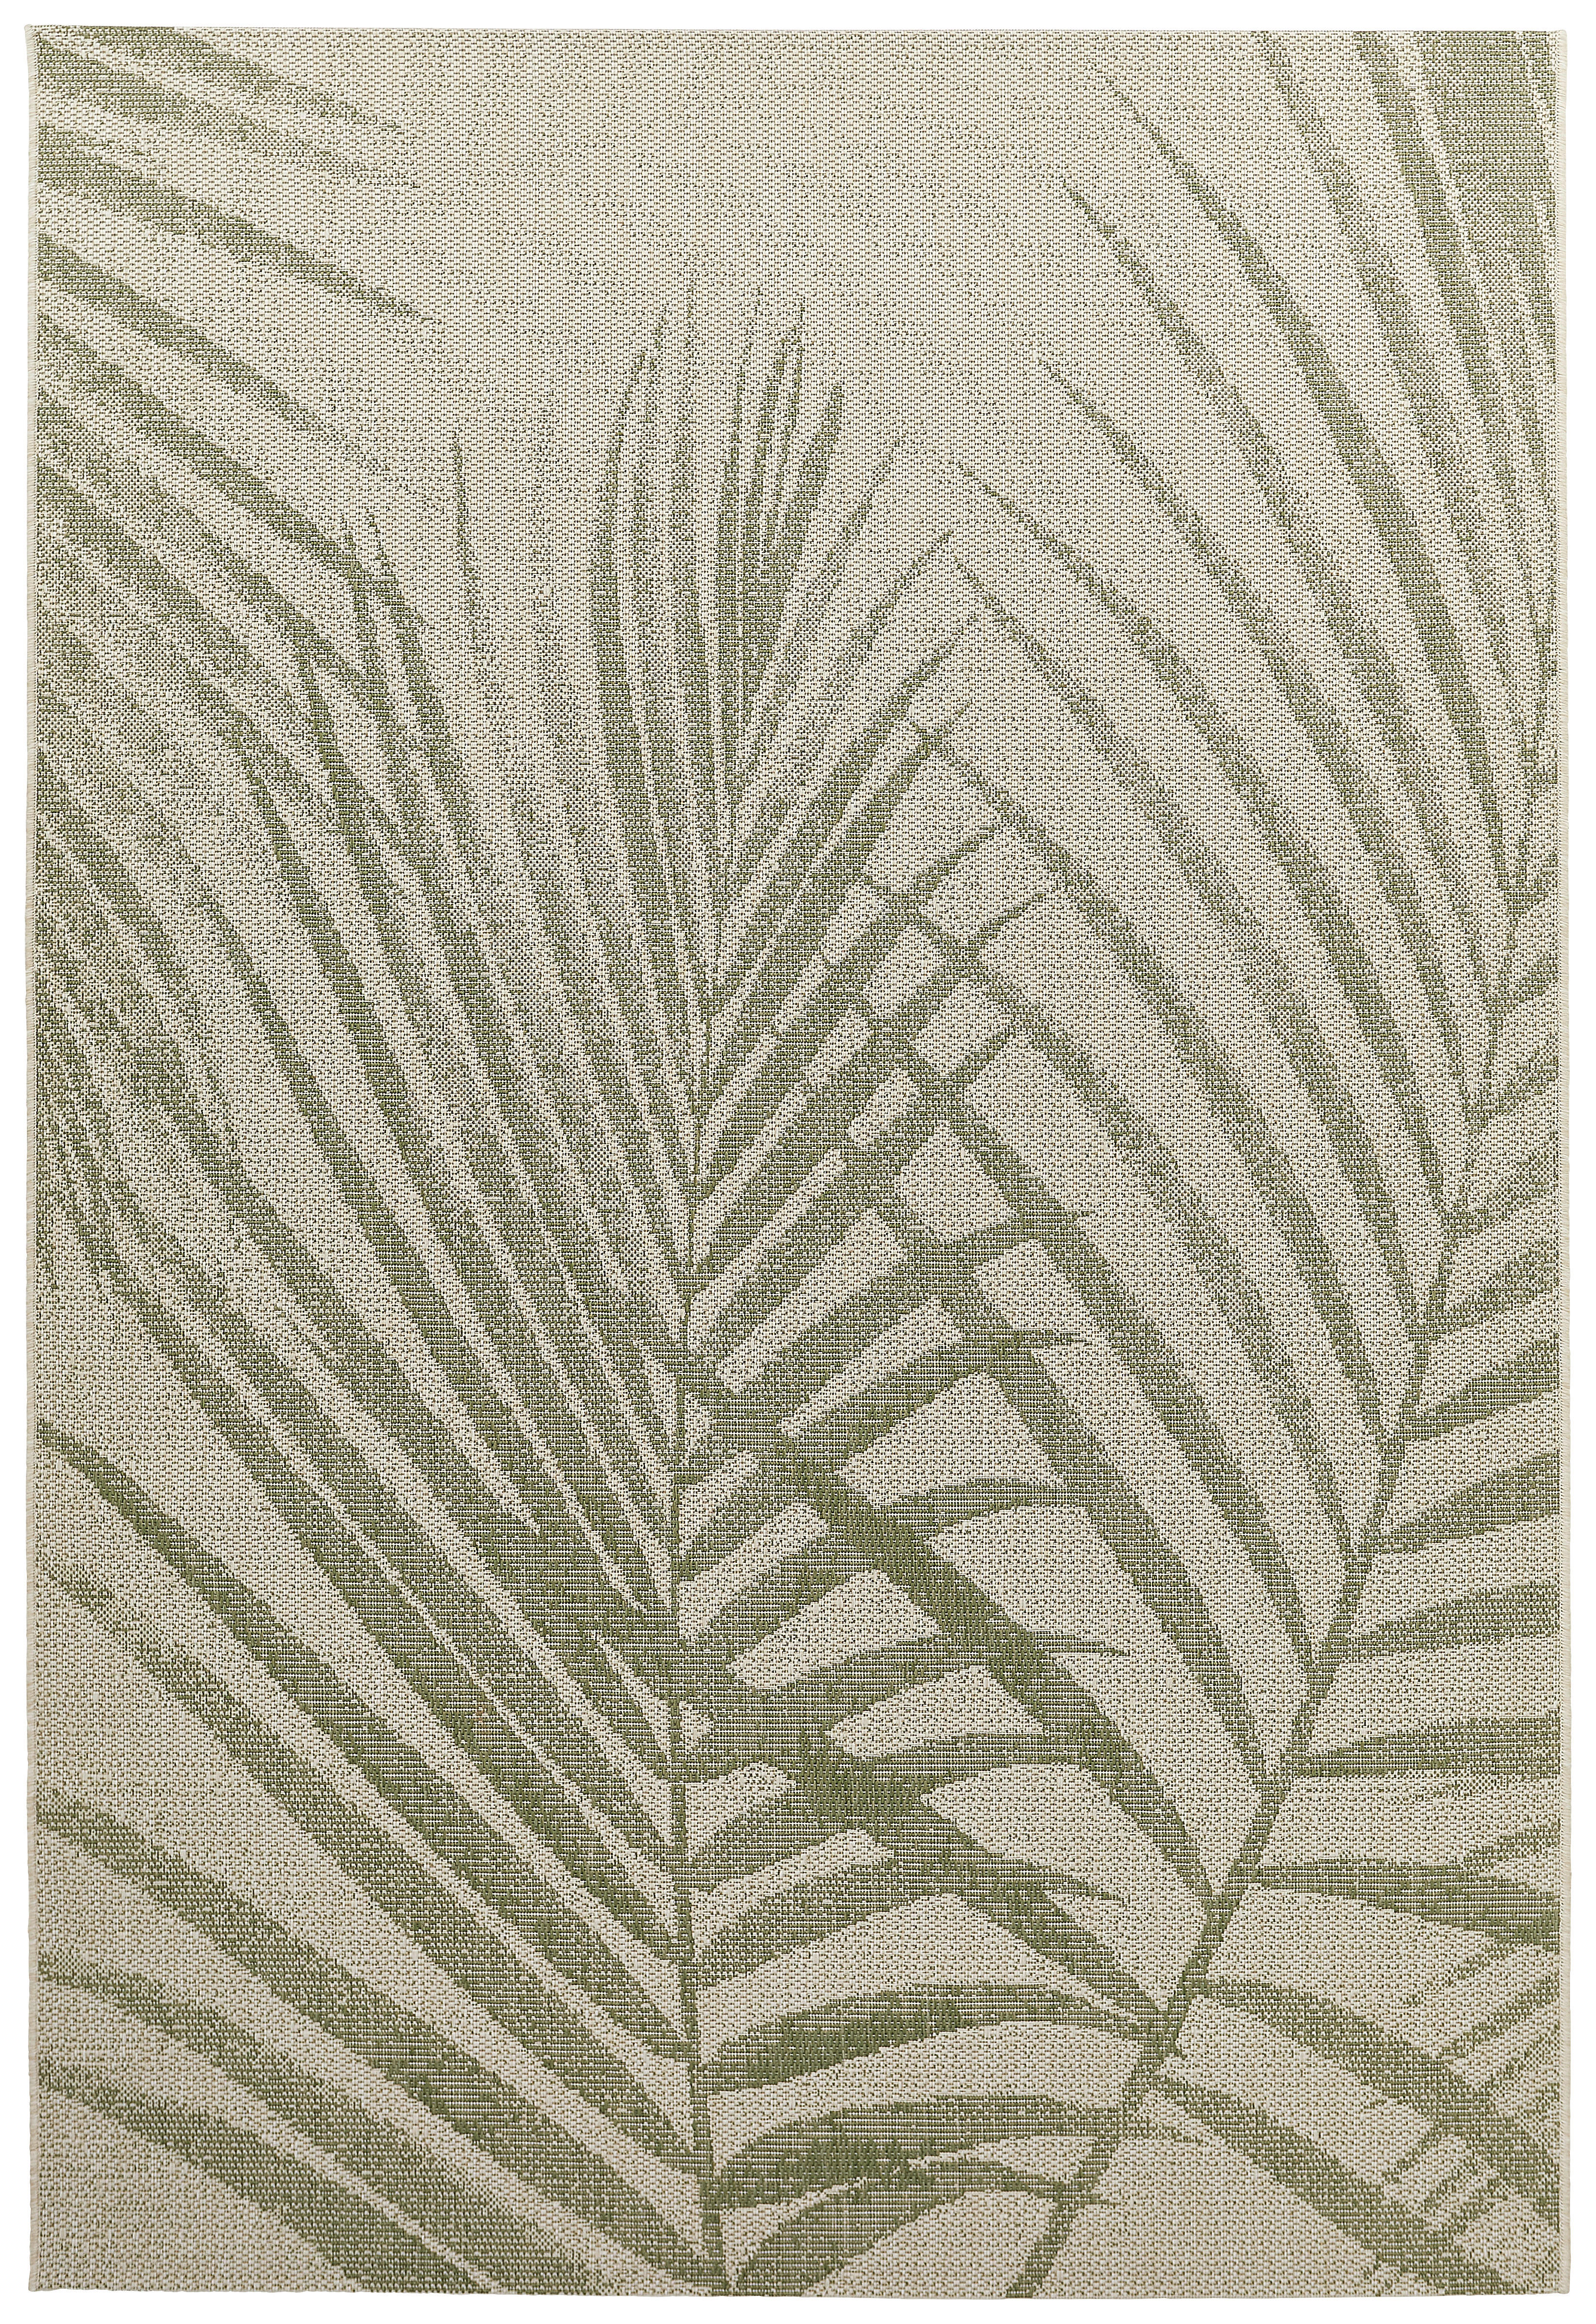 In- und Outdoorteppich 160/230 cm  - Grau/Grün, Design, Textil (160/230cm) - Novel